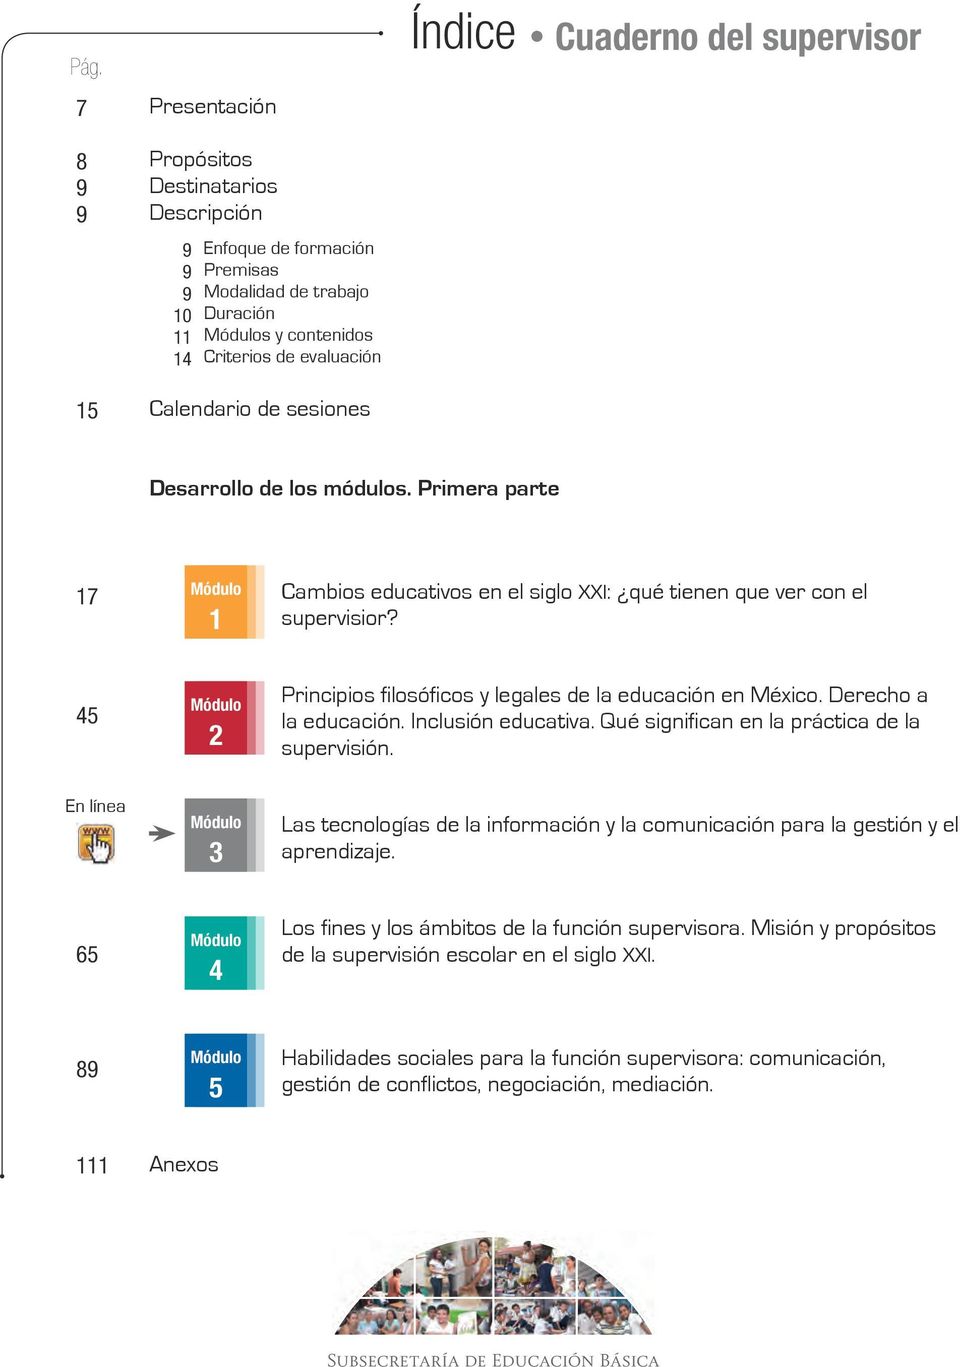 45 Módulo 2 Principios filosóficos y legales de la educación en México. Derecho a la educación. Inclusión educativa. Qué significan en la práctica de la supervisión.